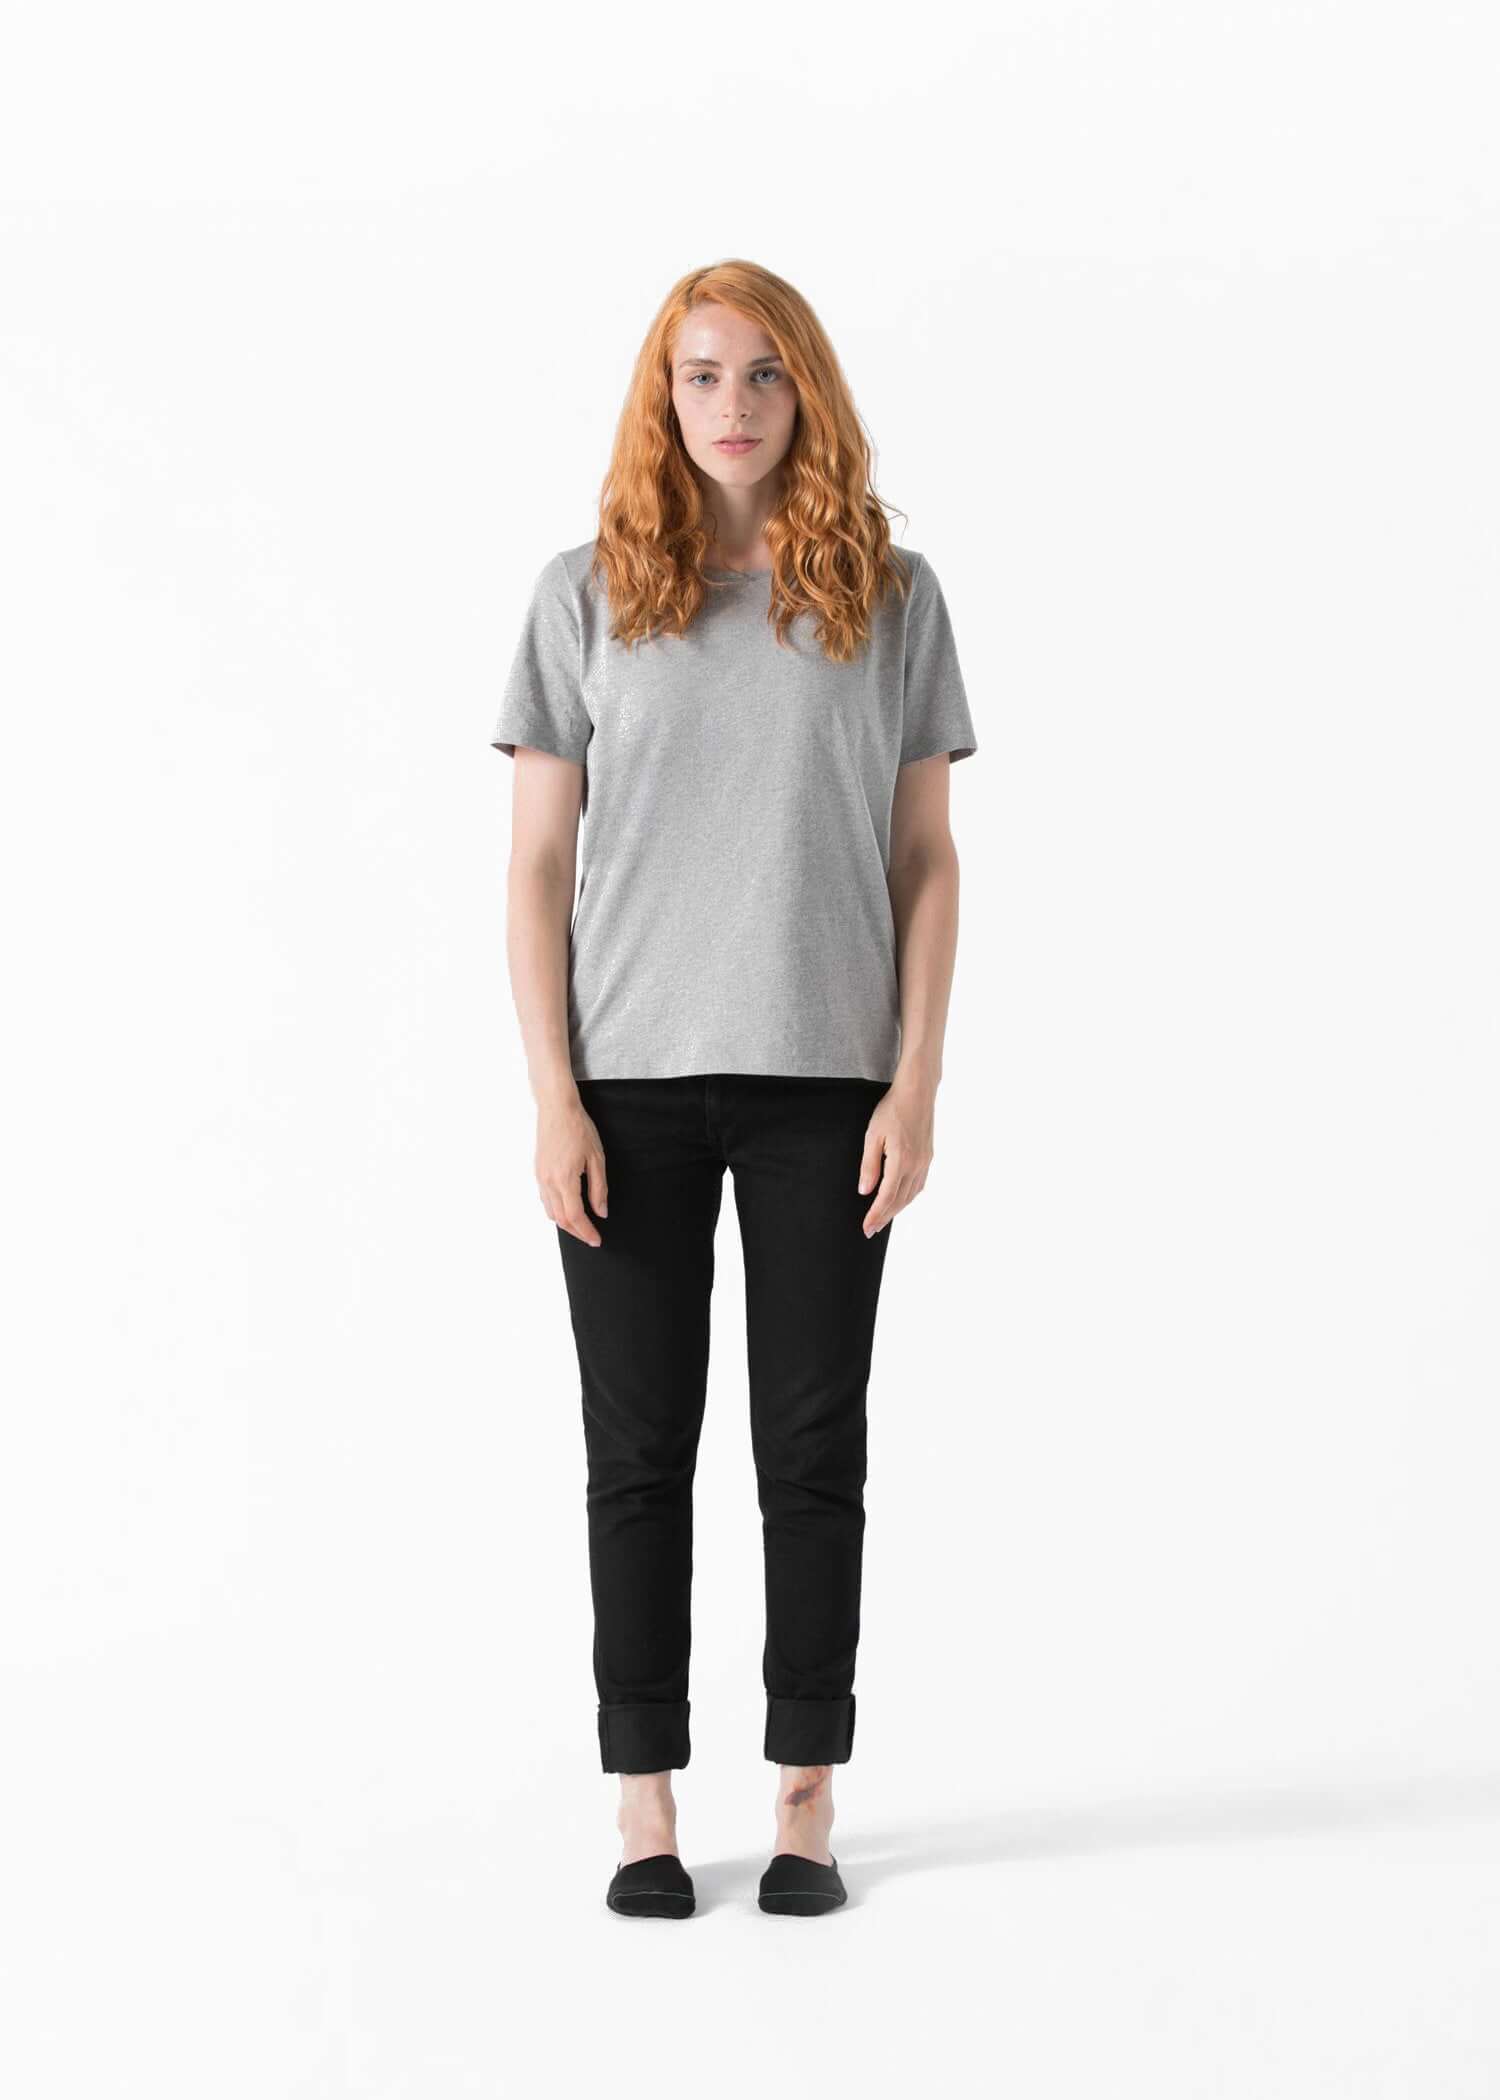 Adelaida Nominación ganar Camiseta algodón orgánico Mujer - Ropa orgánica y sostenible –  minimalismbrand.com